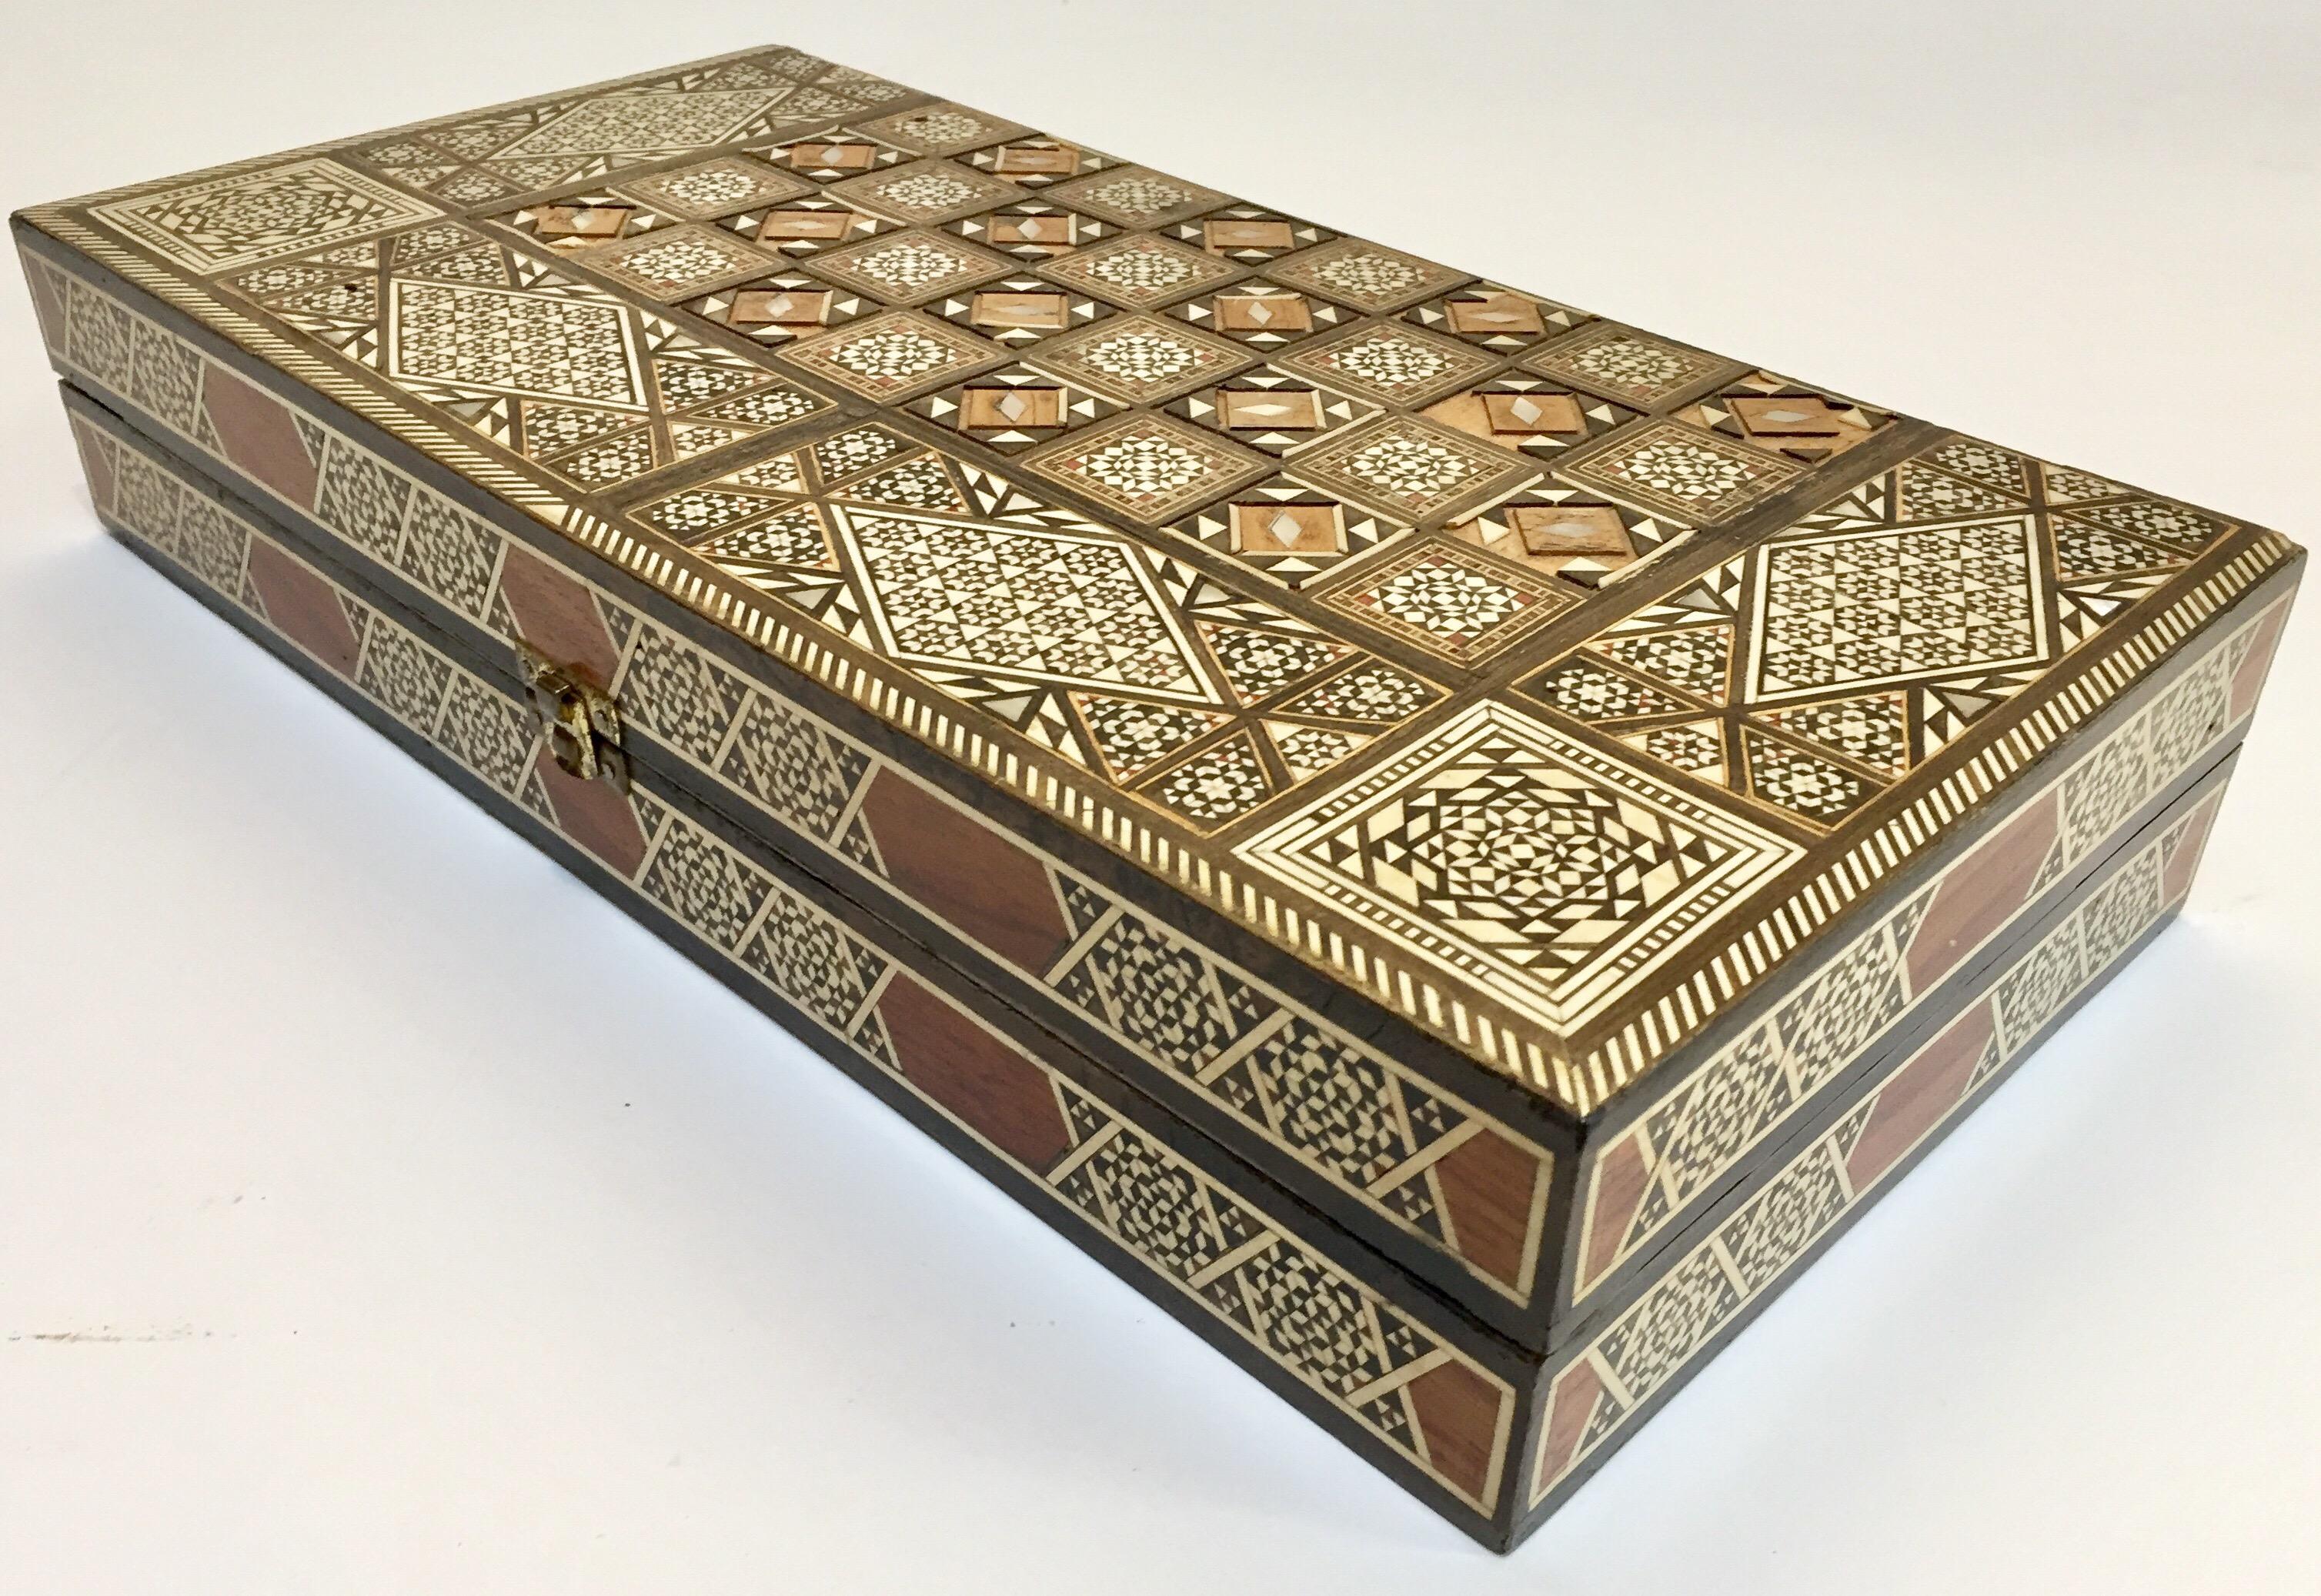 Syrien Vieux grand jeu complet de backgammon et d'echecs en mosaique incrustee syrienne